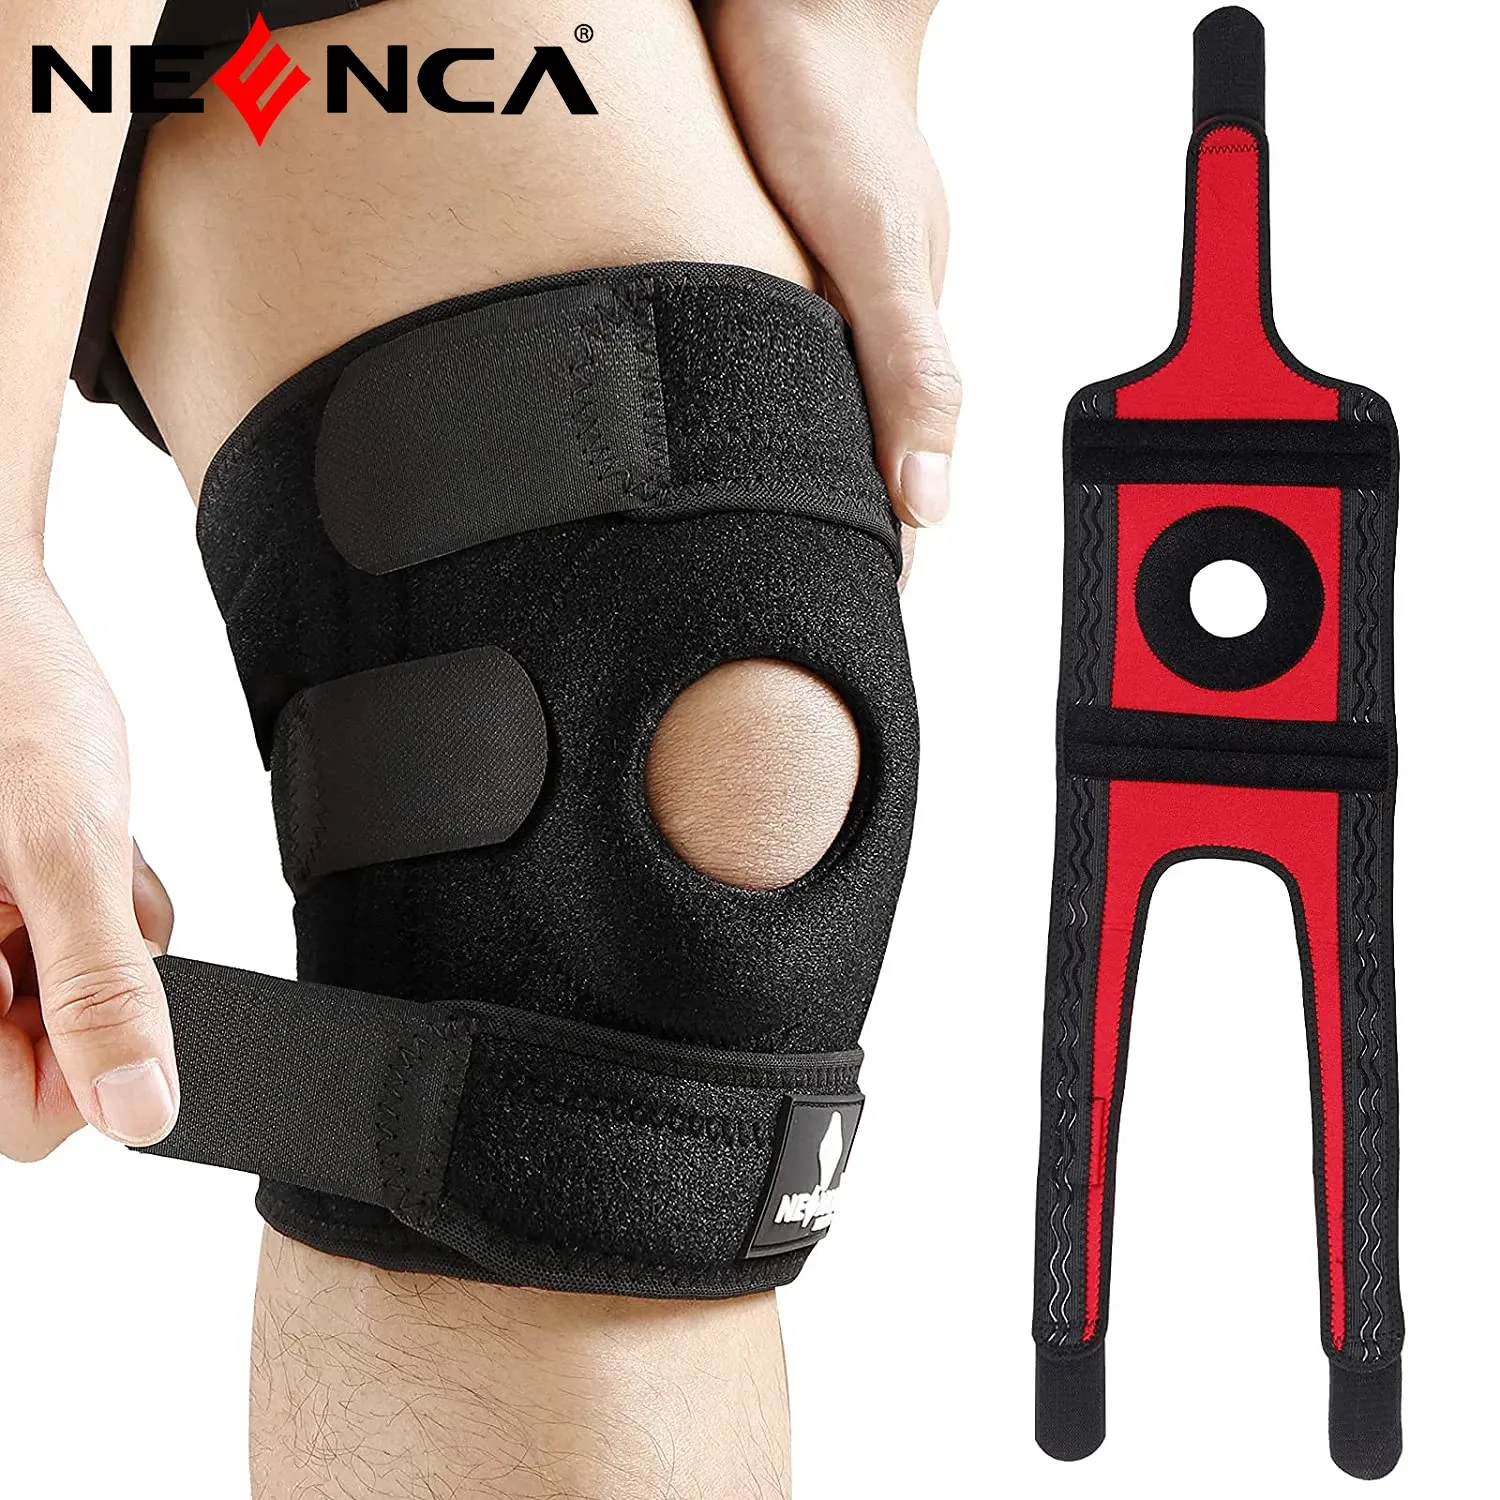 Sécurité Neenca 1pc Sports Gnee Pads Four Springs Soutient Eva Breathable Knee Abrace avec stabilisateurs latéraux